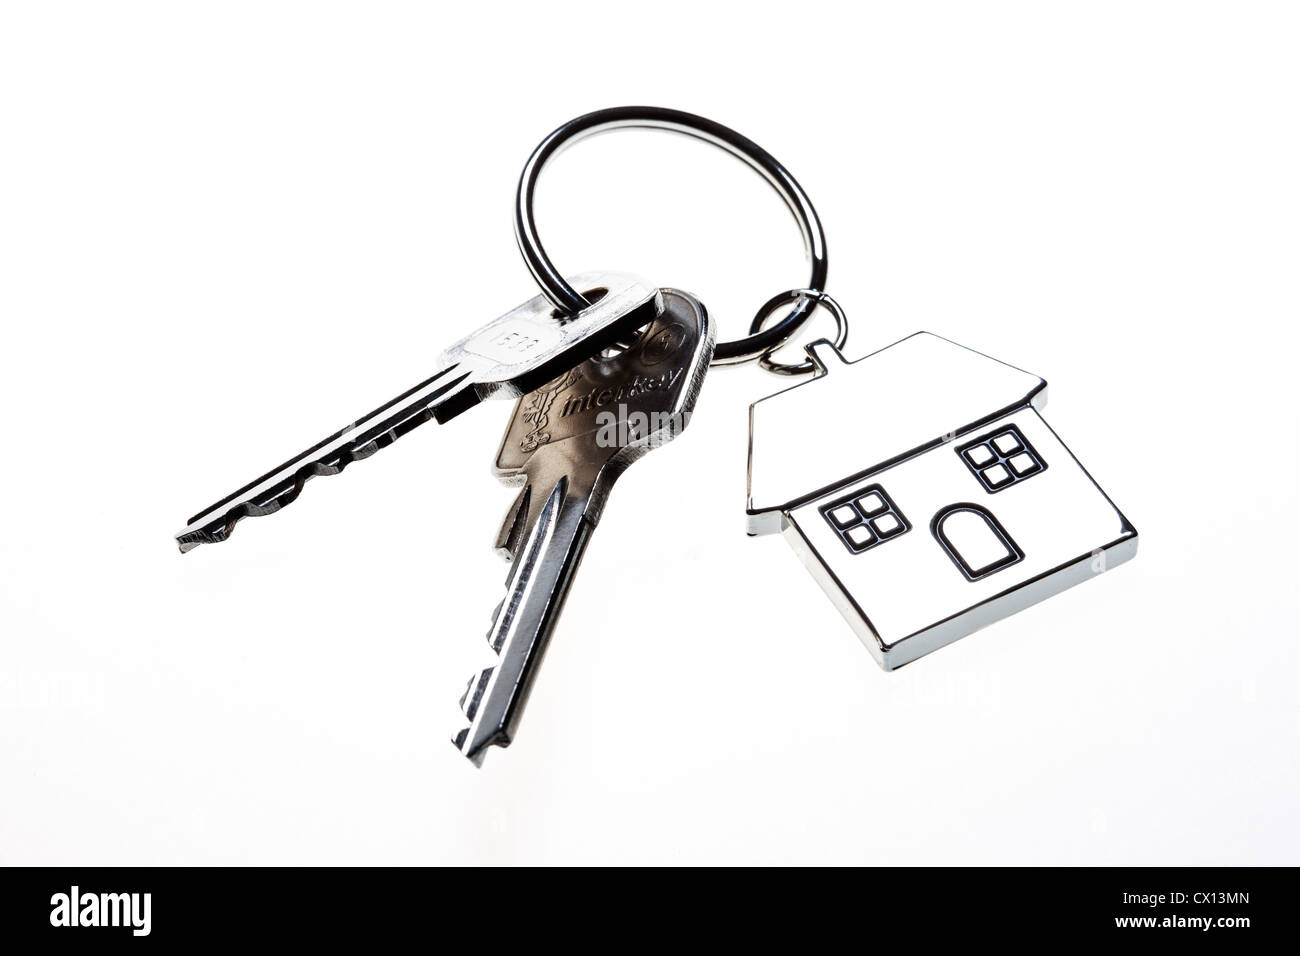 Schlüssel, Latchkey auf einem Ring, Schlüsselanhänger in der Form eines Hauses. Stockfoto